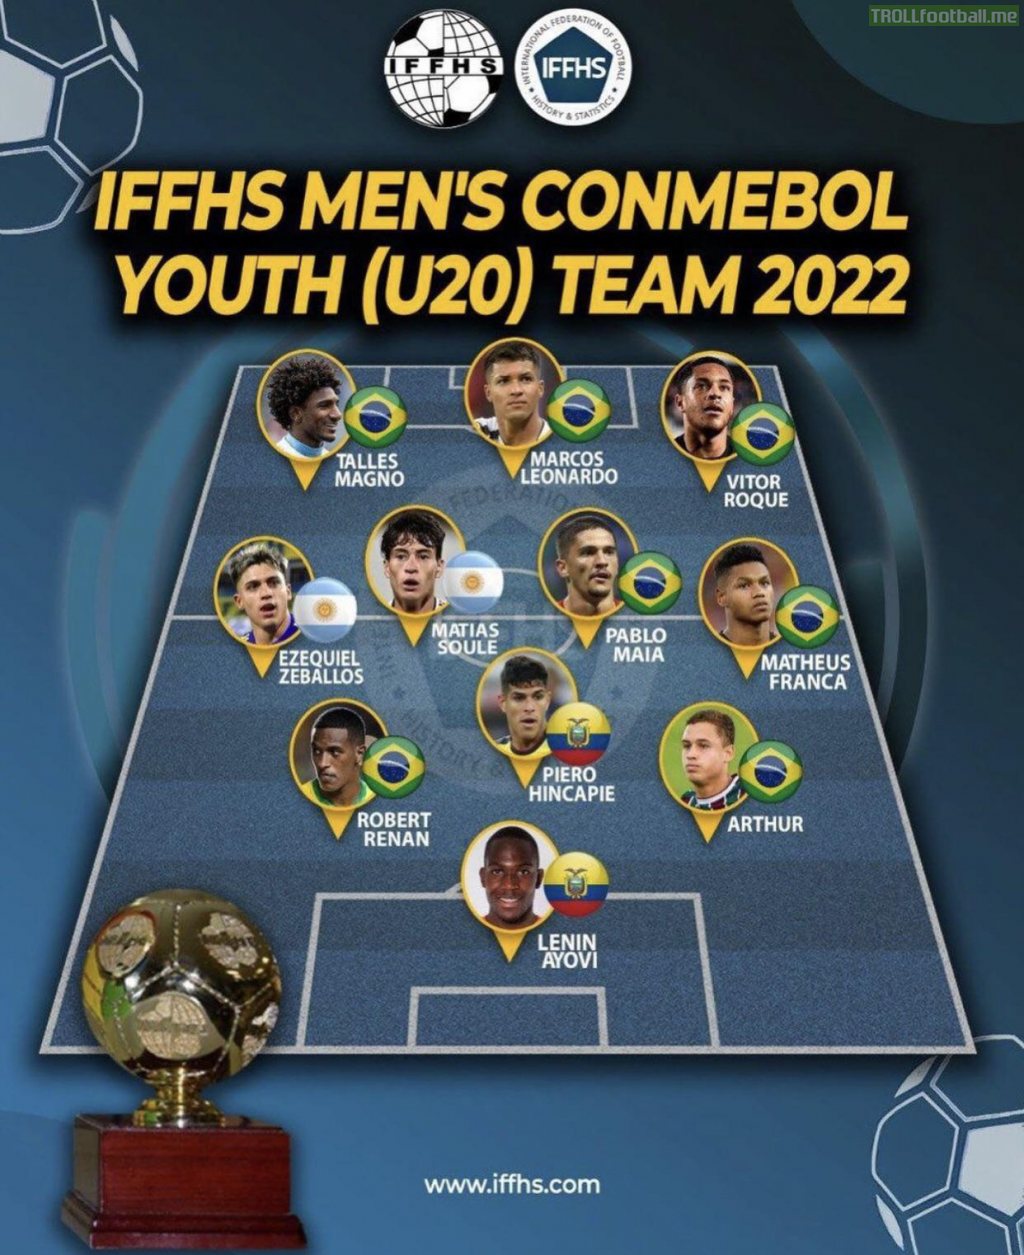 IFFHS MEN’S Conmebol Youth (U20) Team 2022